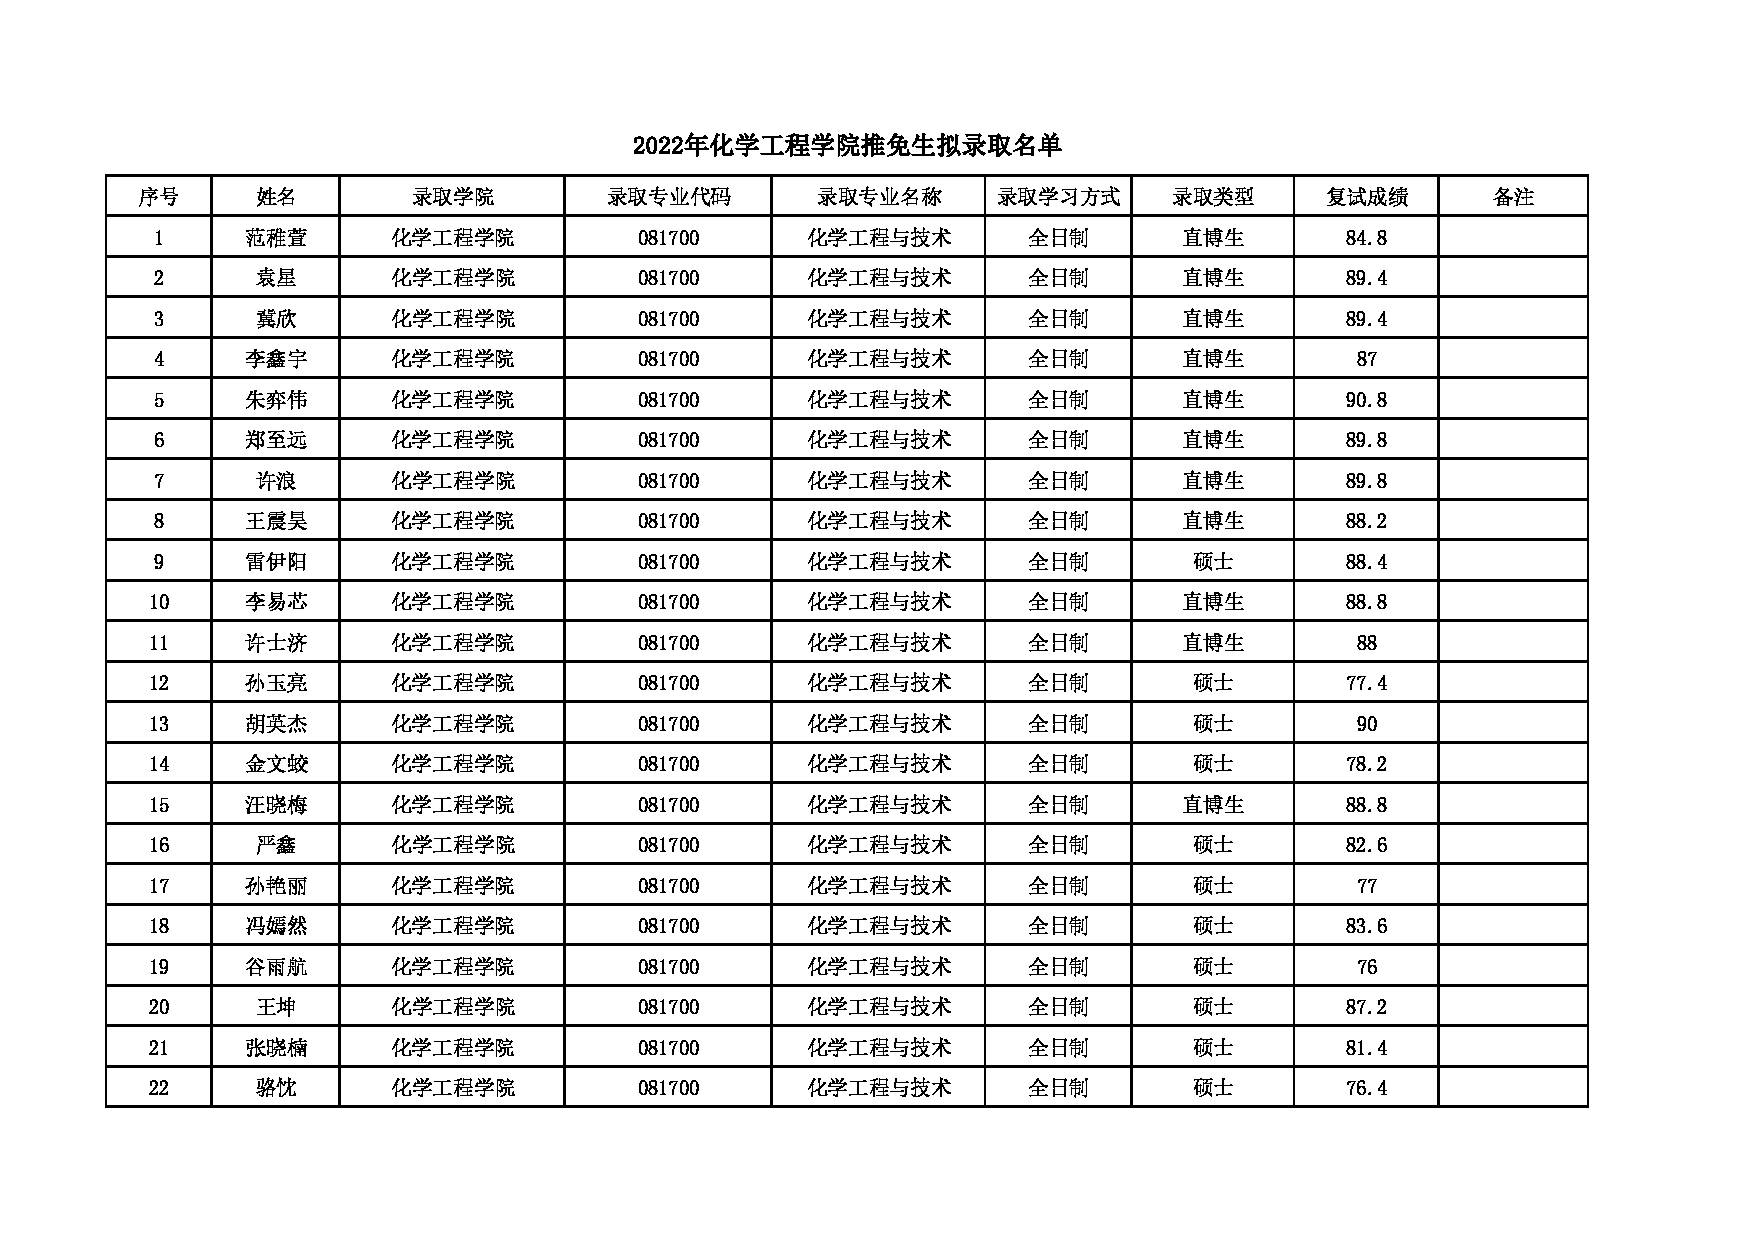 2022考研拟录取名单：北京化工大学2022年化工学院推免生拟录取名单 第1页